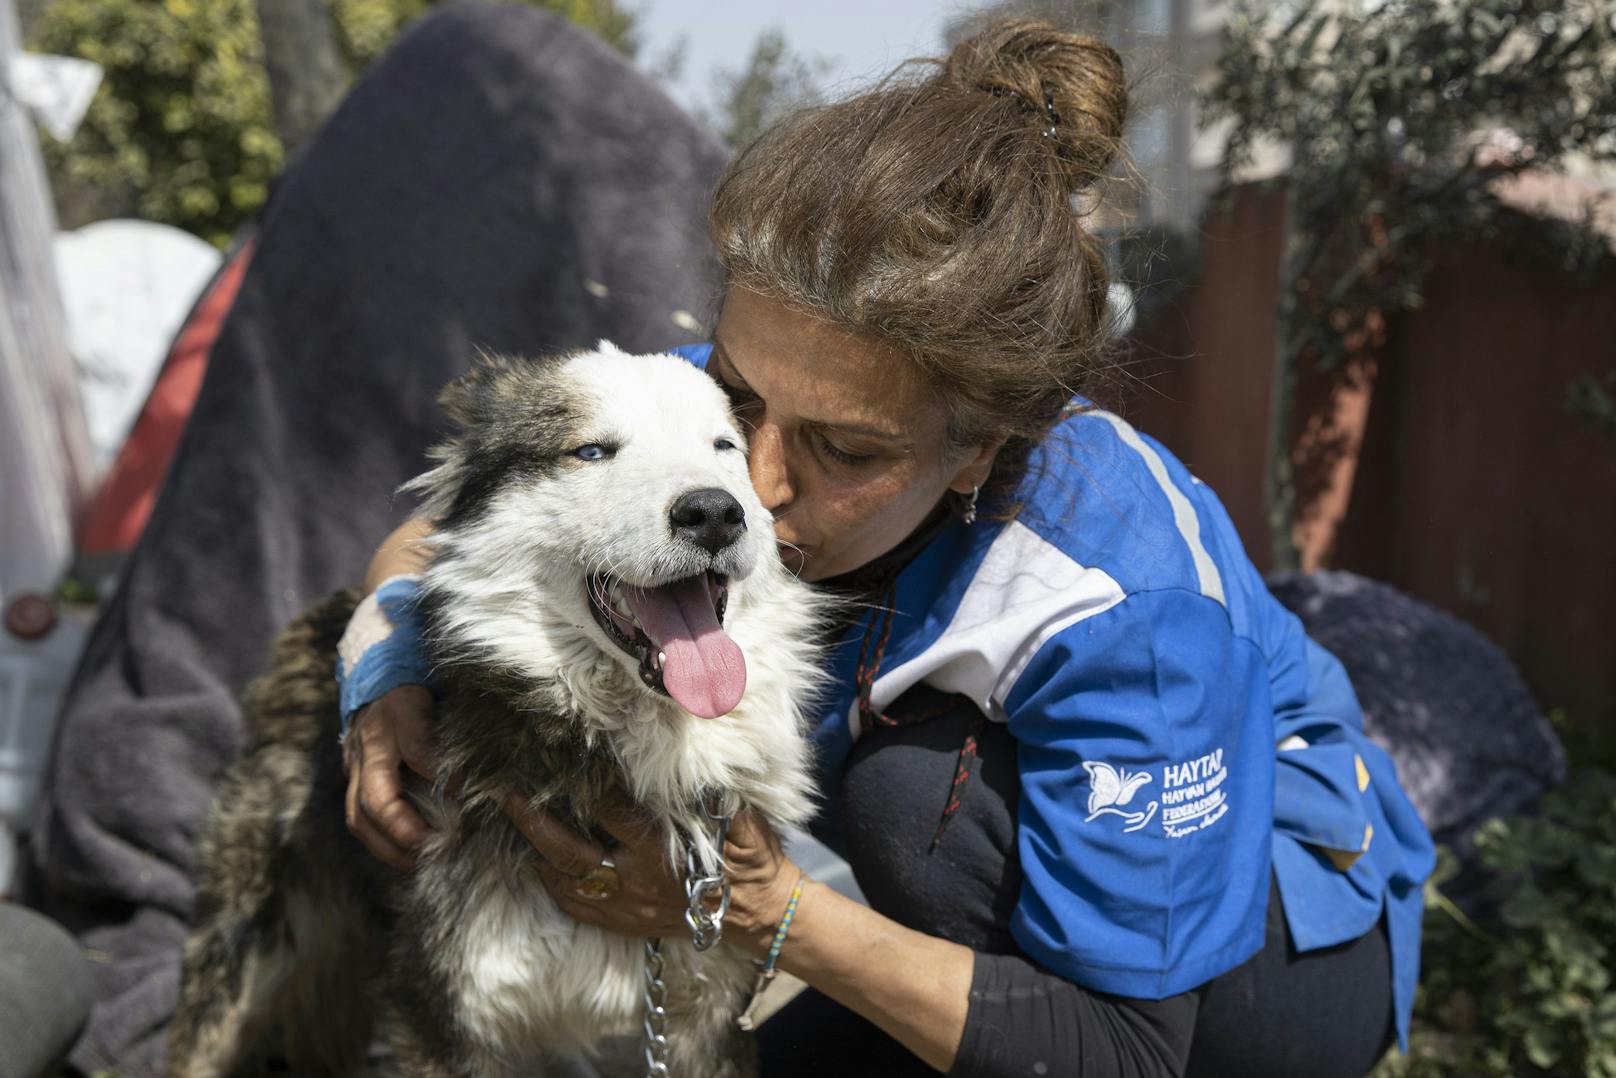 Ein Hund namens "Aleks" wurde nach 22 Tagen aus den Trümmern gerettet.